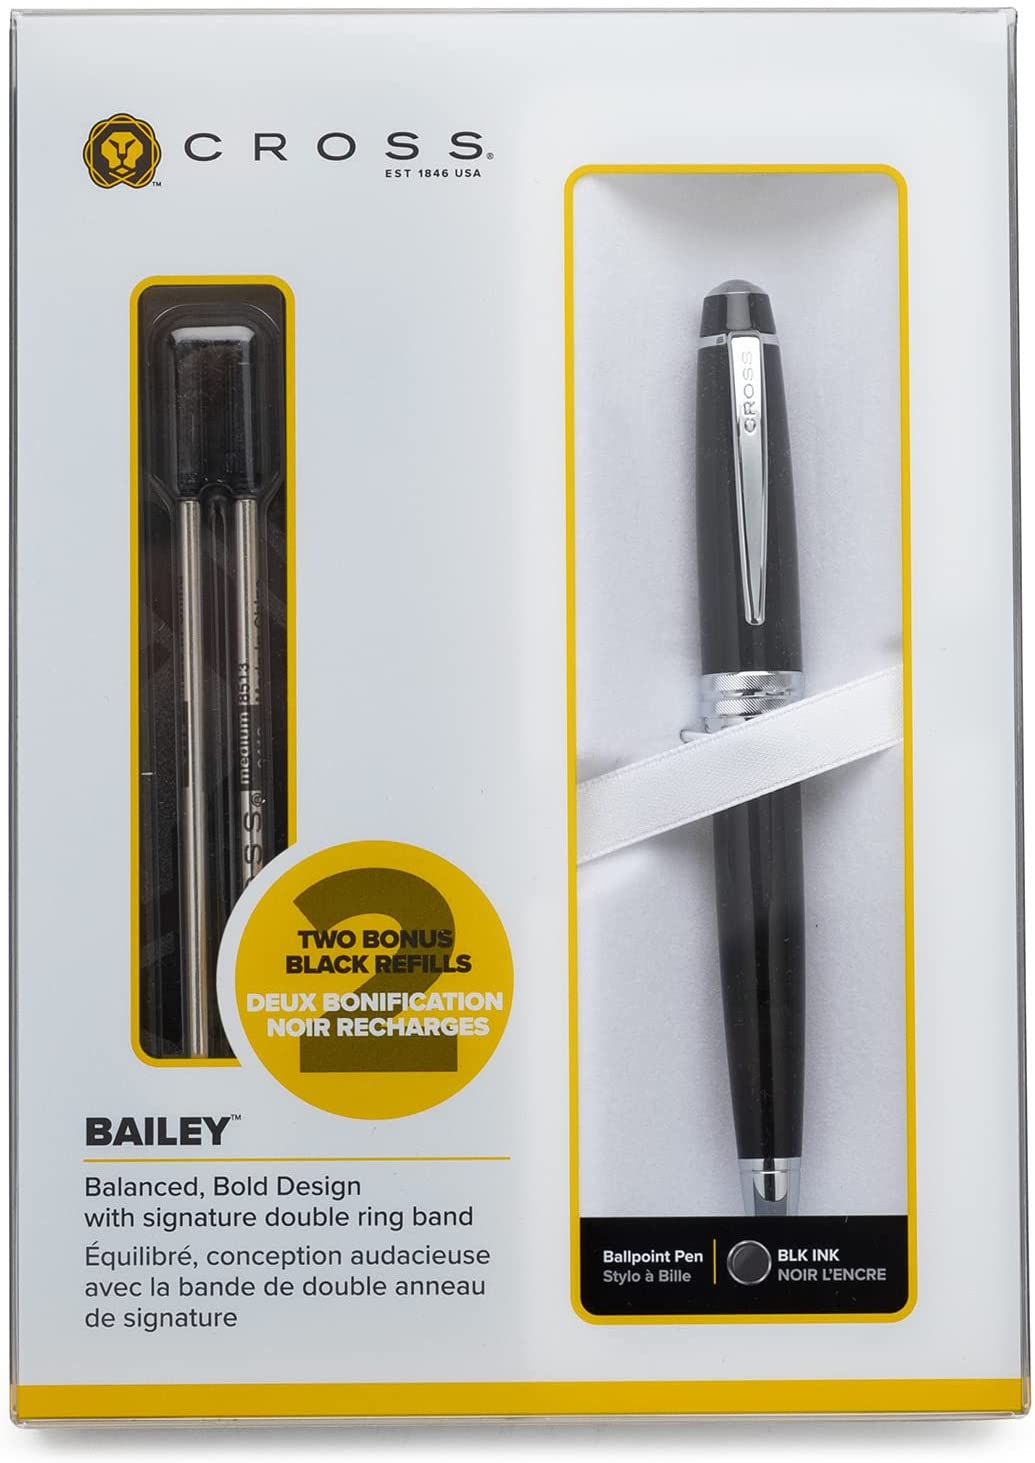 Una vez más Empeorando aborto Cross Bailey Ballpoint Pen with Refills sale | Altman Luggage New York